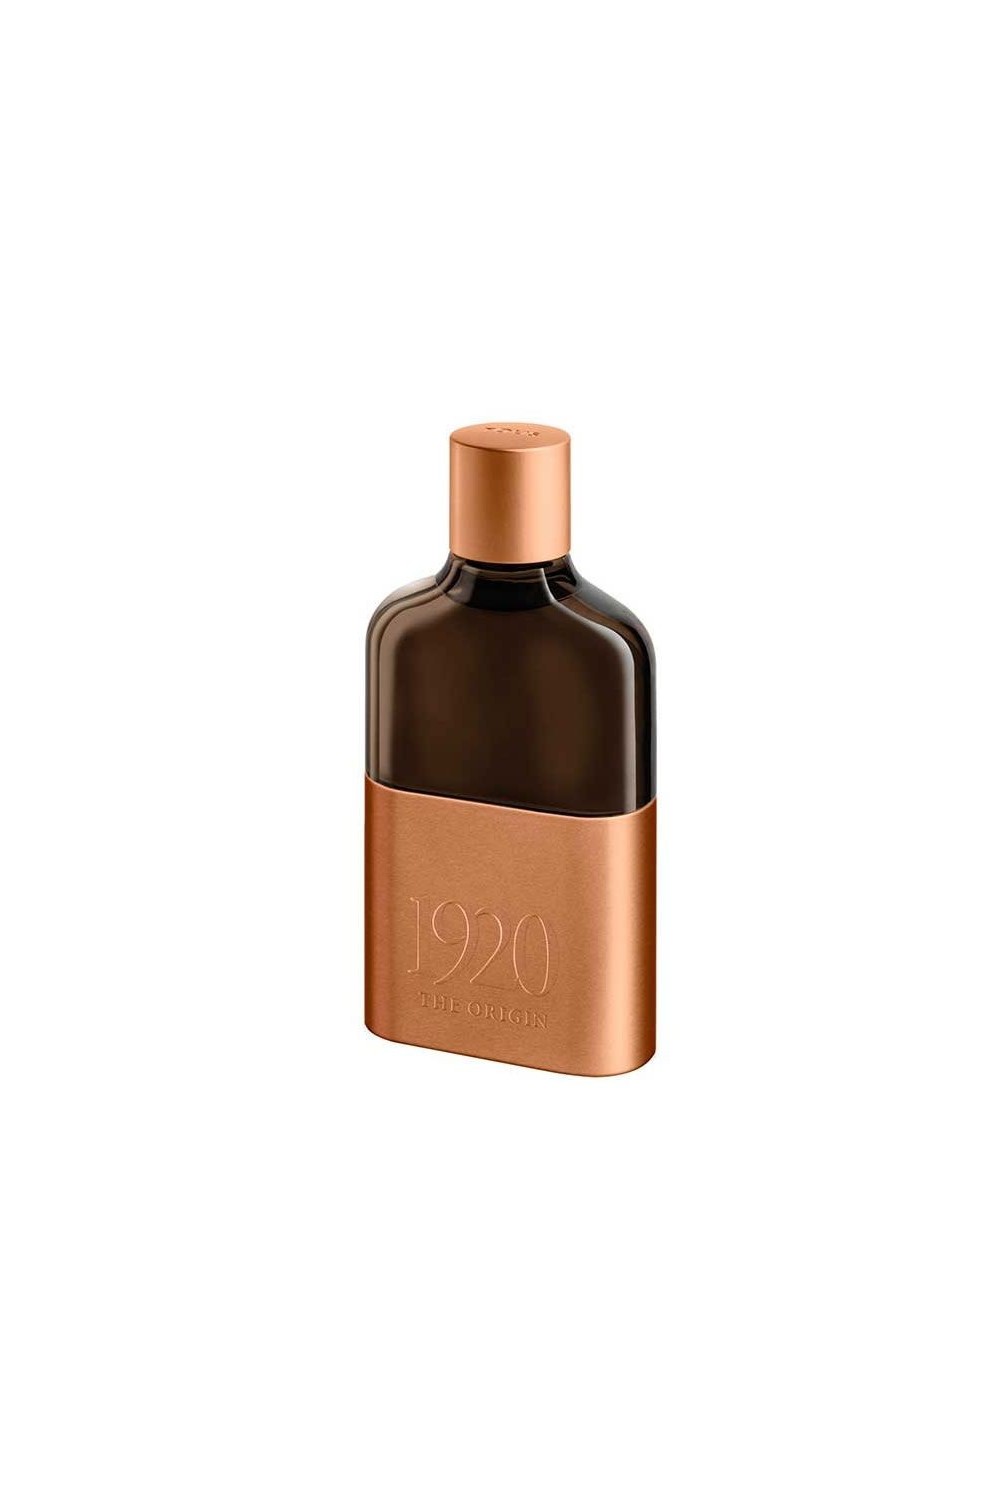 Tous 1920 The Origin Eau De Perfume Spray 60ml